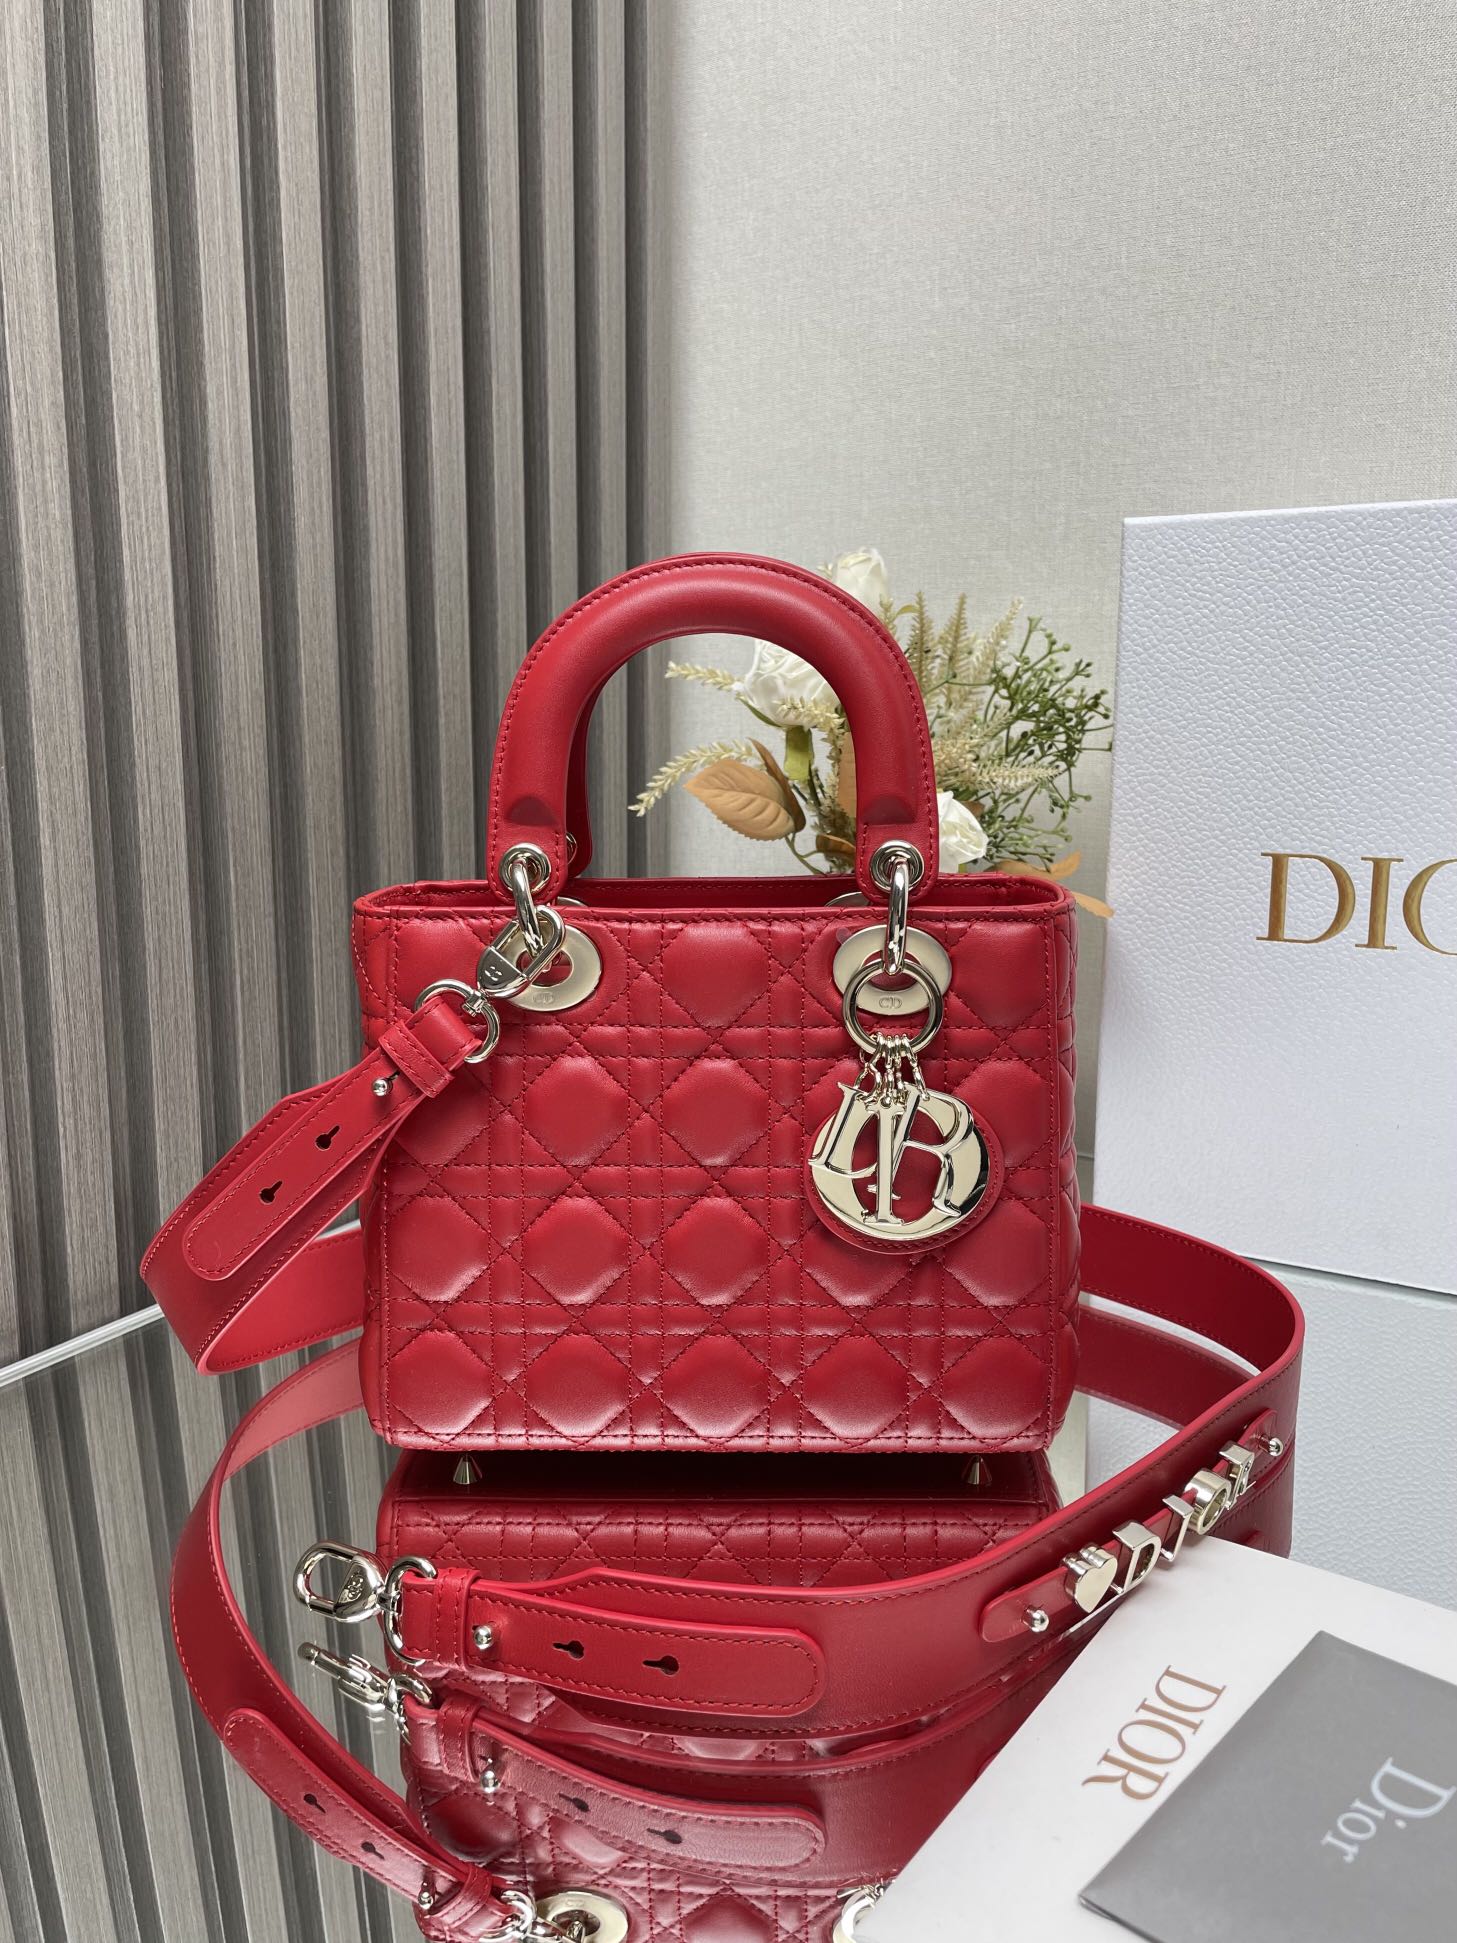 Am besten wie
 Dior Taschen Handtaschen Replika AAA+ Designer
 Rot Lammfell Schaffell Lady Ketten